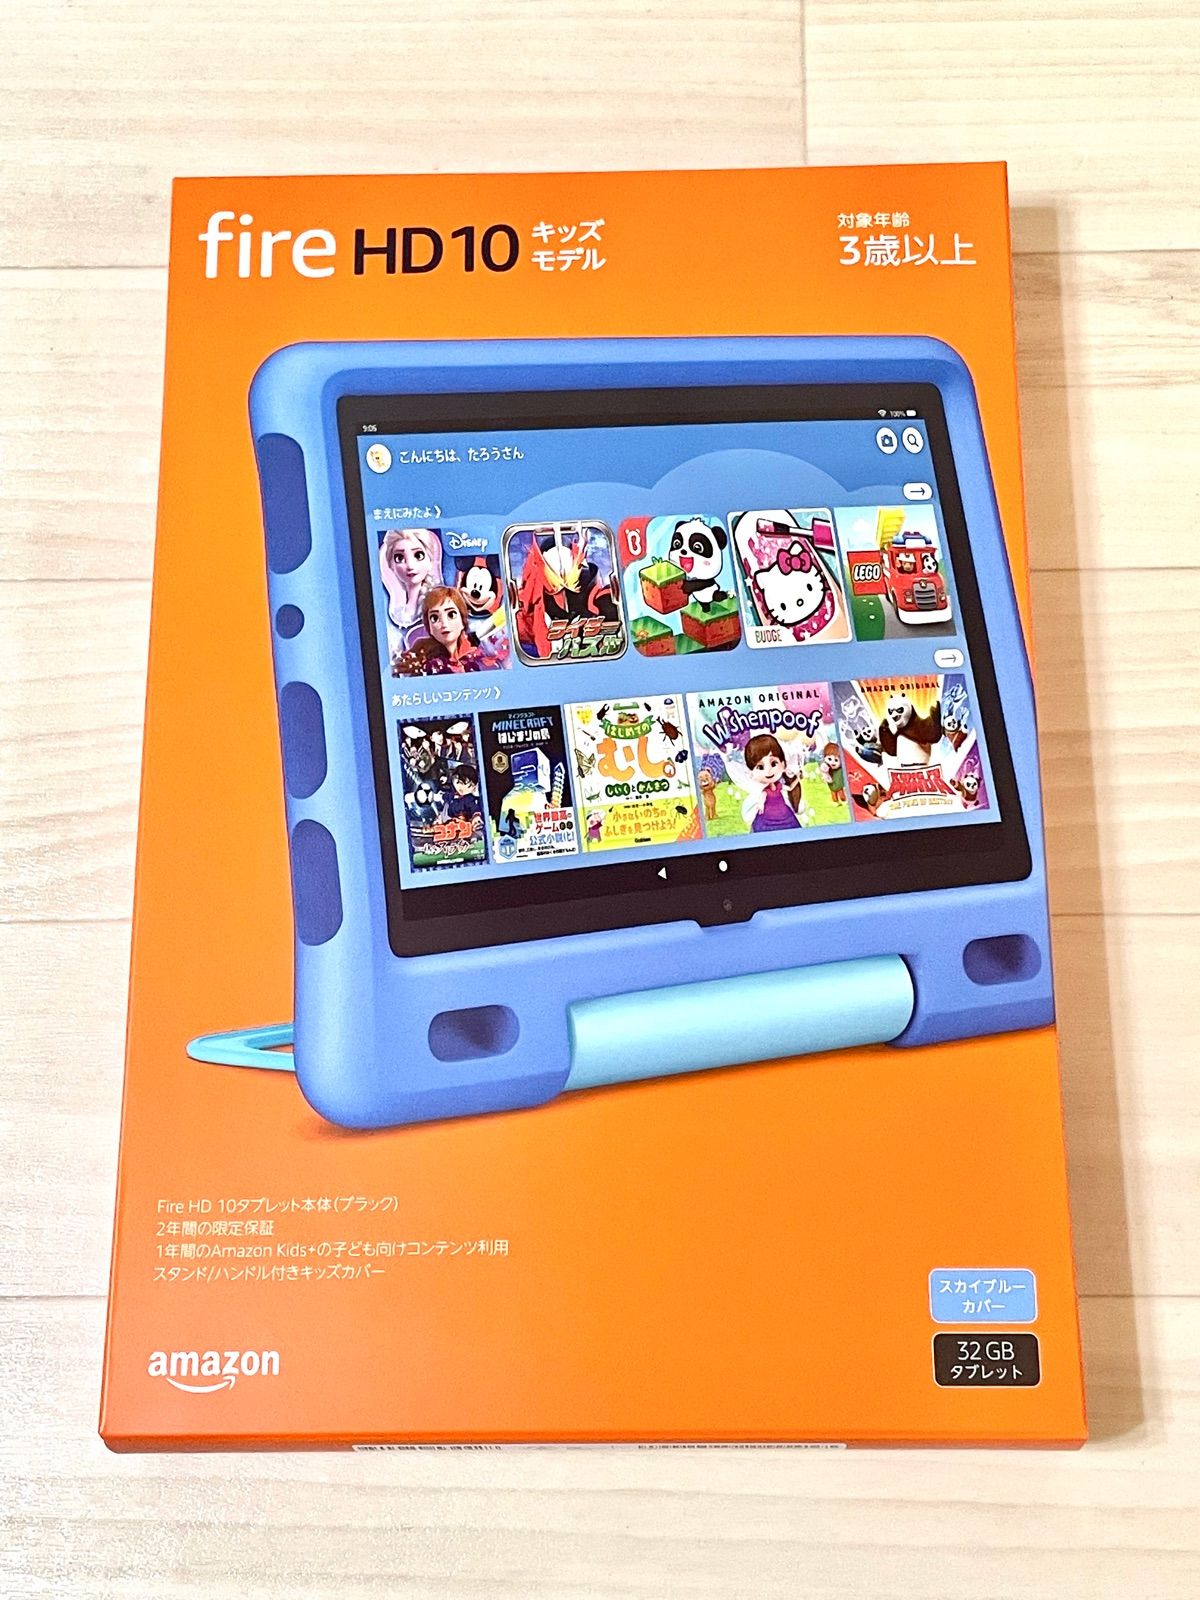 【新品未開封】Fire HD 10 キッズモデル スカイブルー バッグ付き